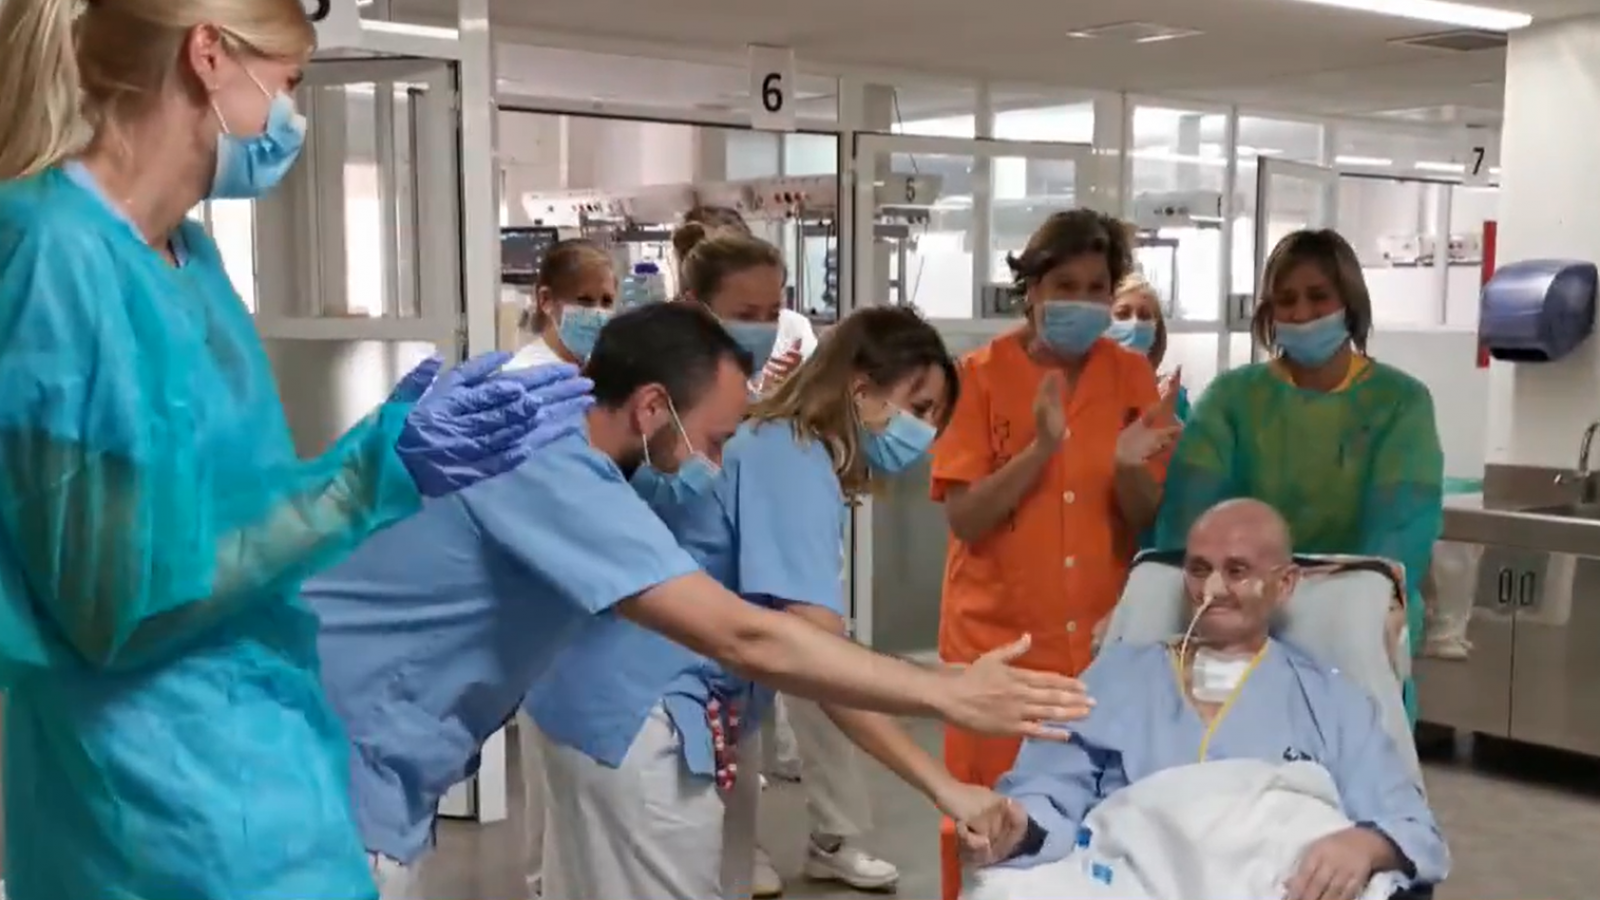 Los celadores son el colectivo con más tasa de infección dentro de los sanitarios, según el Hospital Príncipe de Asturias - RTVE.es